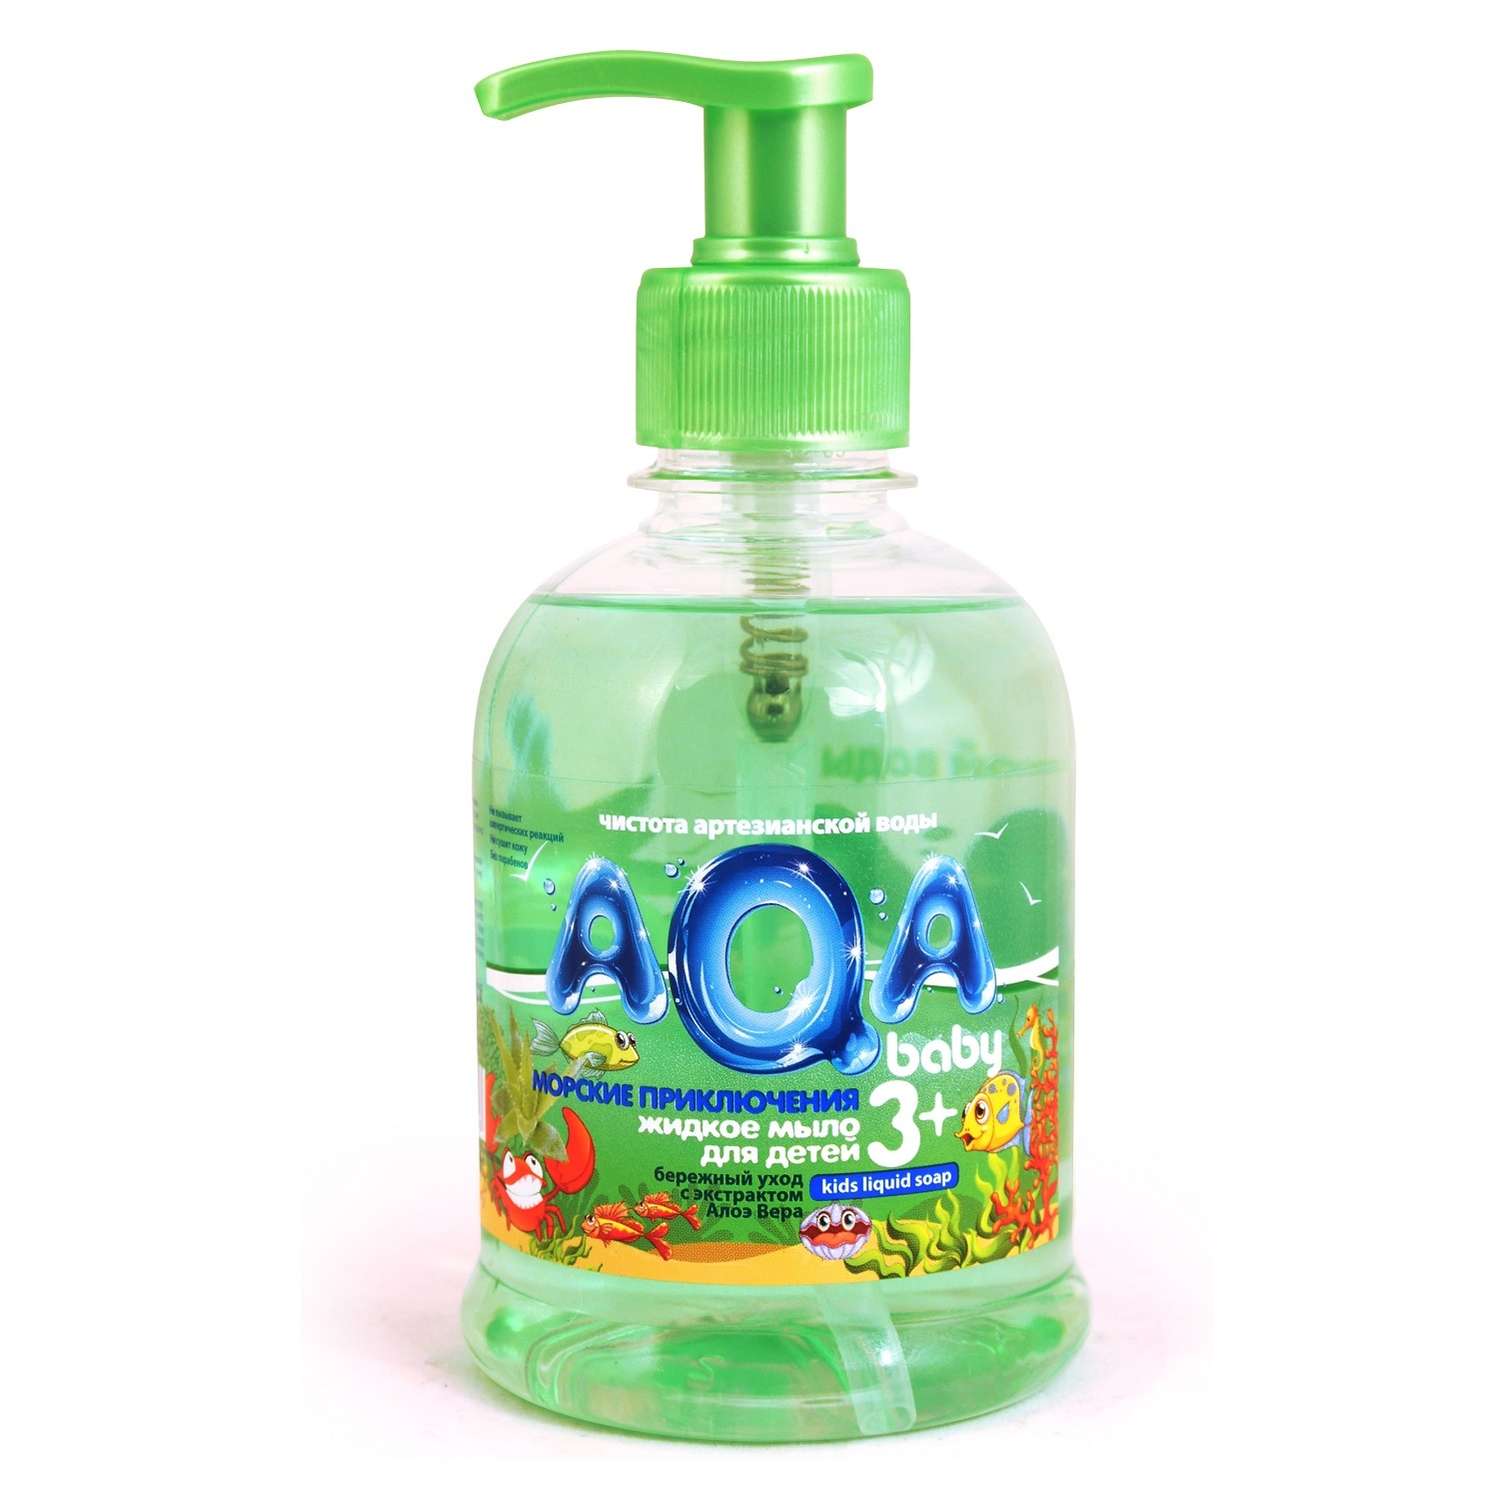 Жидкое мыло AQA baby для детей Морские приключения 300 мл - фото 1